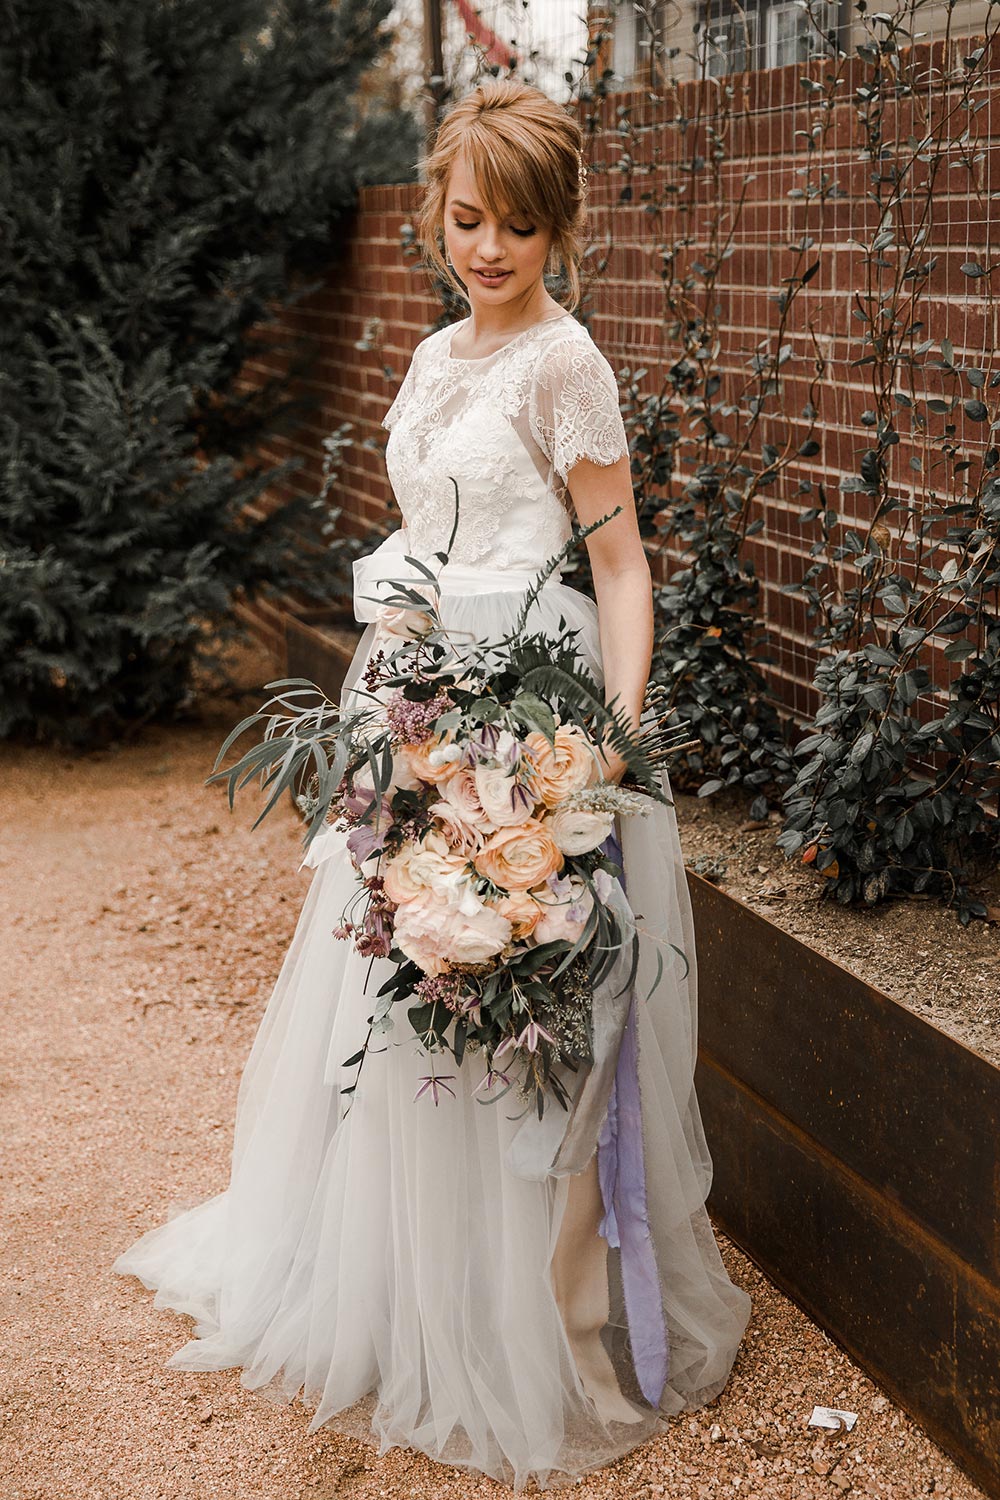 Wedding dress with macramé elements 